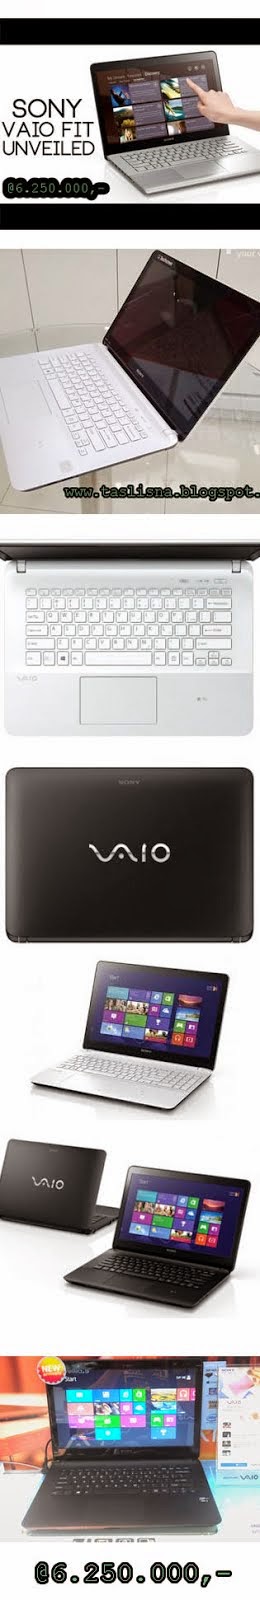 Sony Vaio free Flashdisk Unik